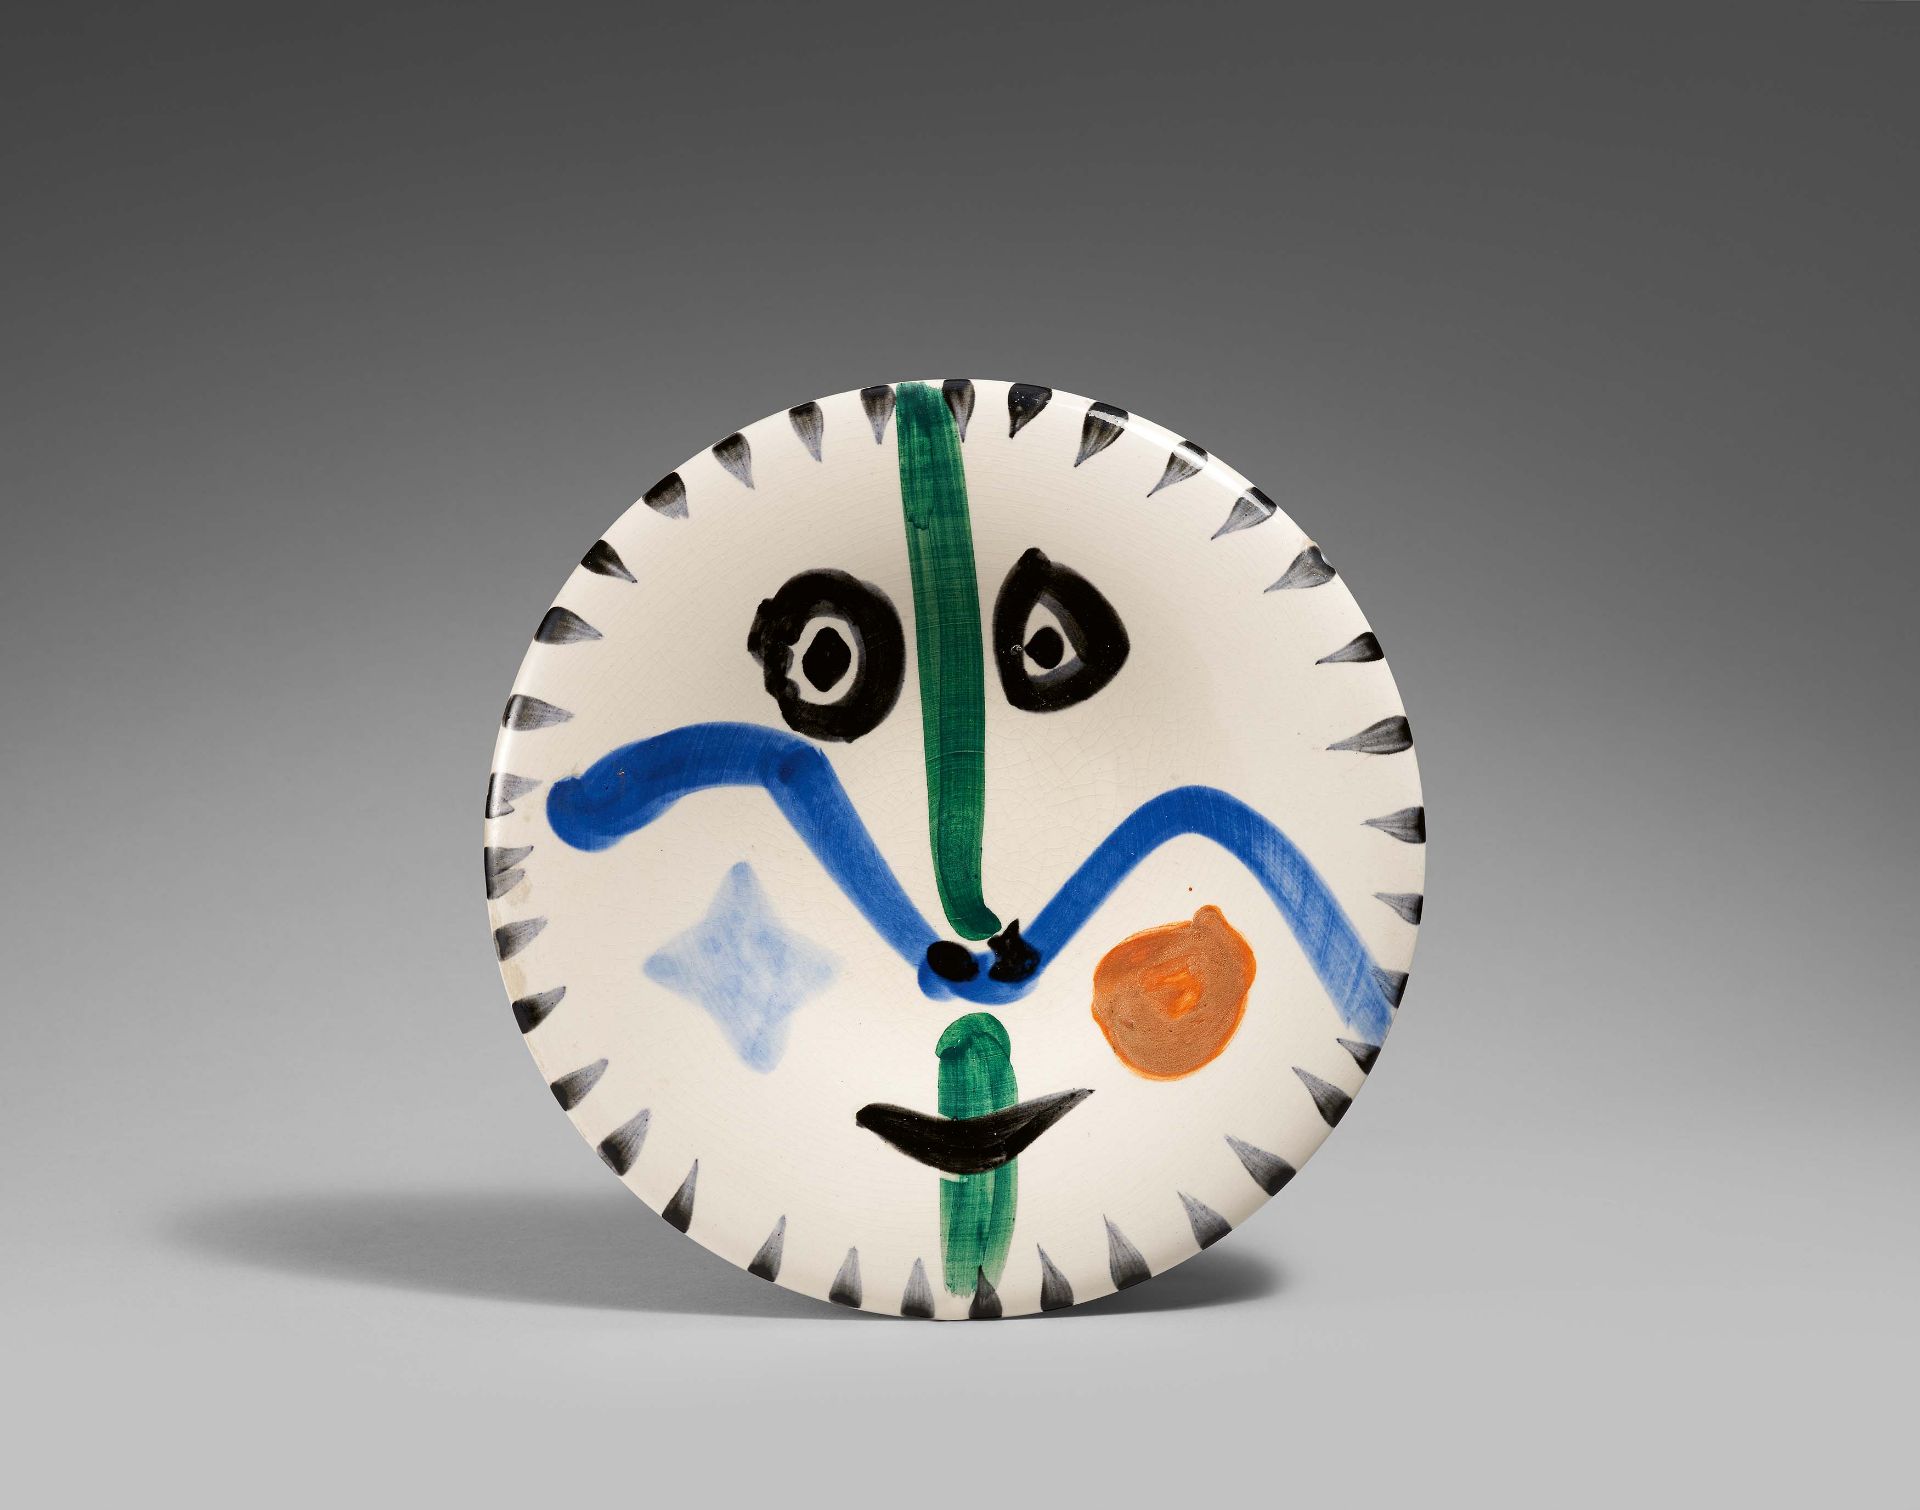 Picasso, Pablo1881 Malaga - 1973 MouginsFace no. 0. 1963. White earthenware clay, partially